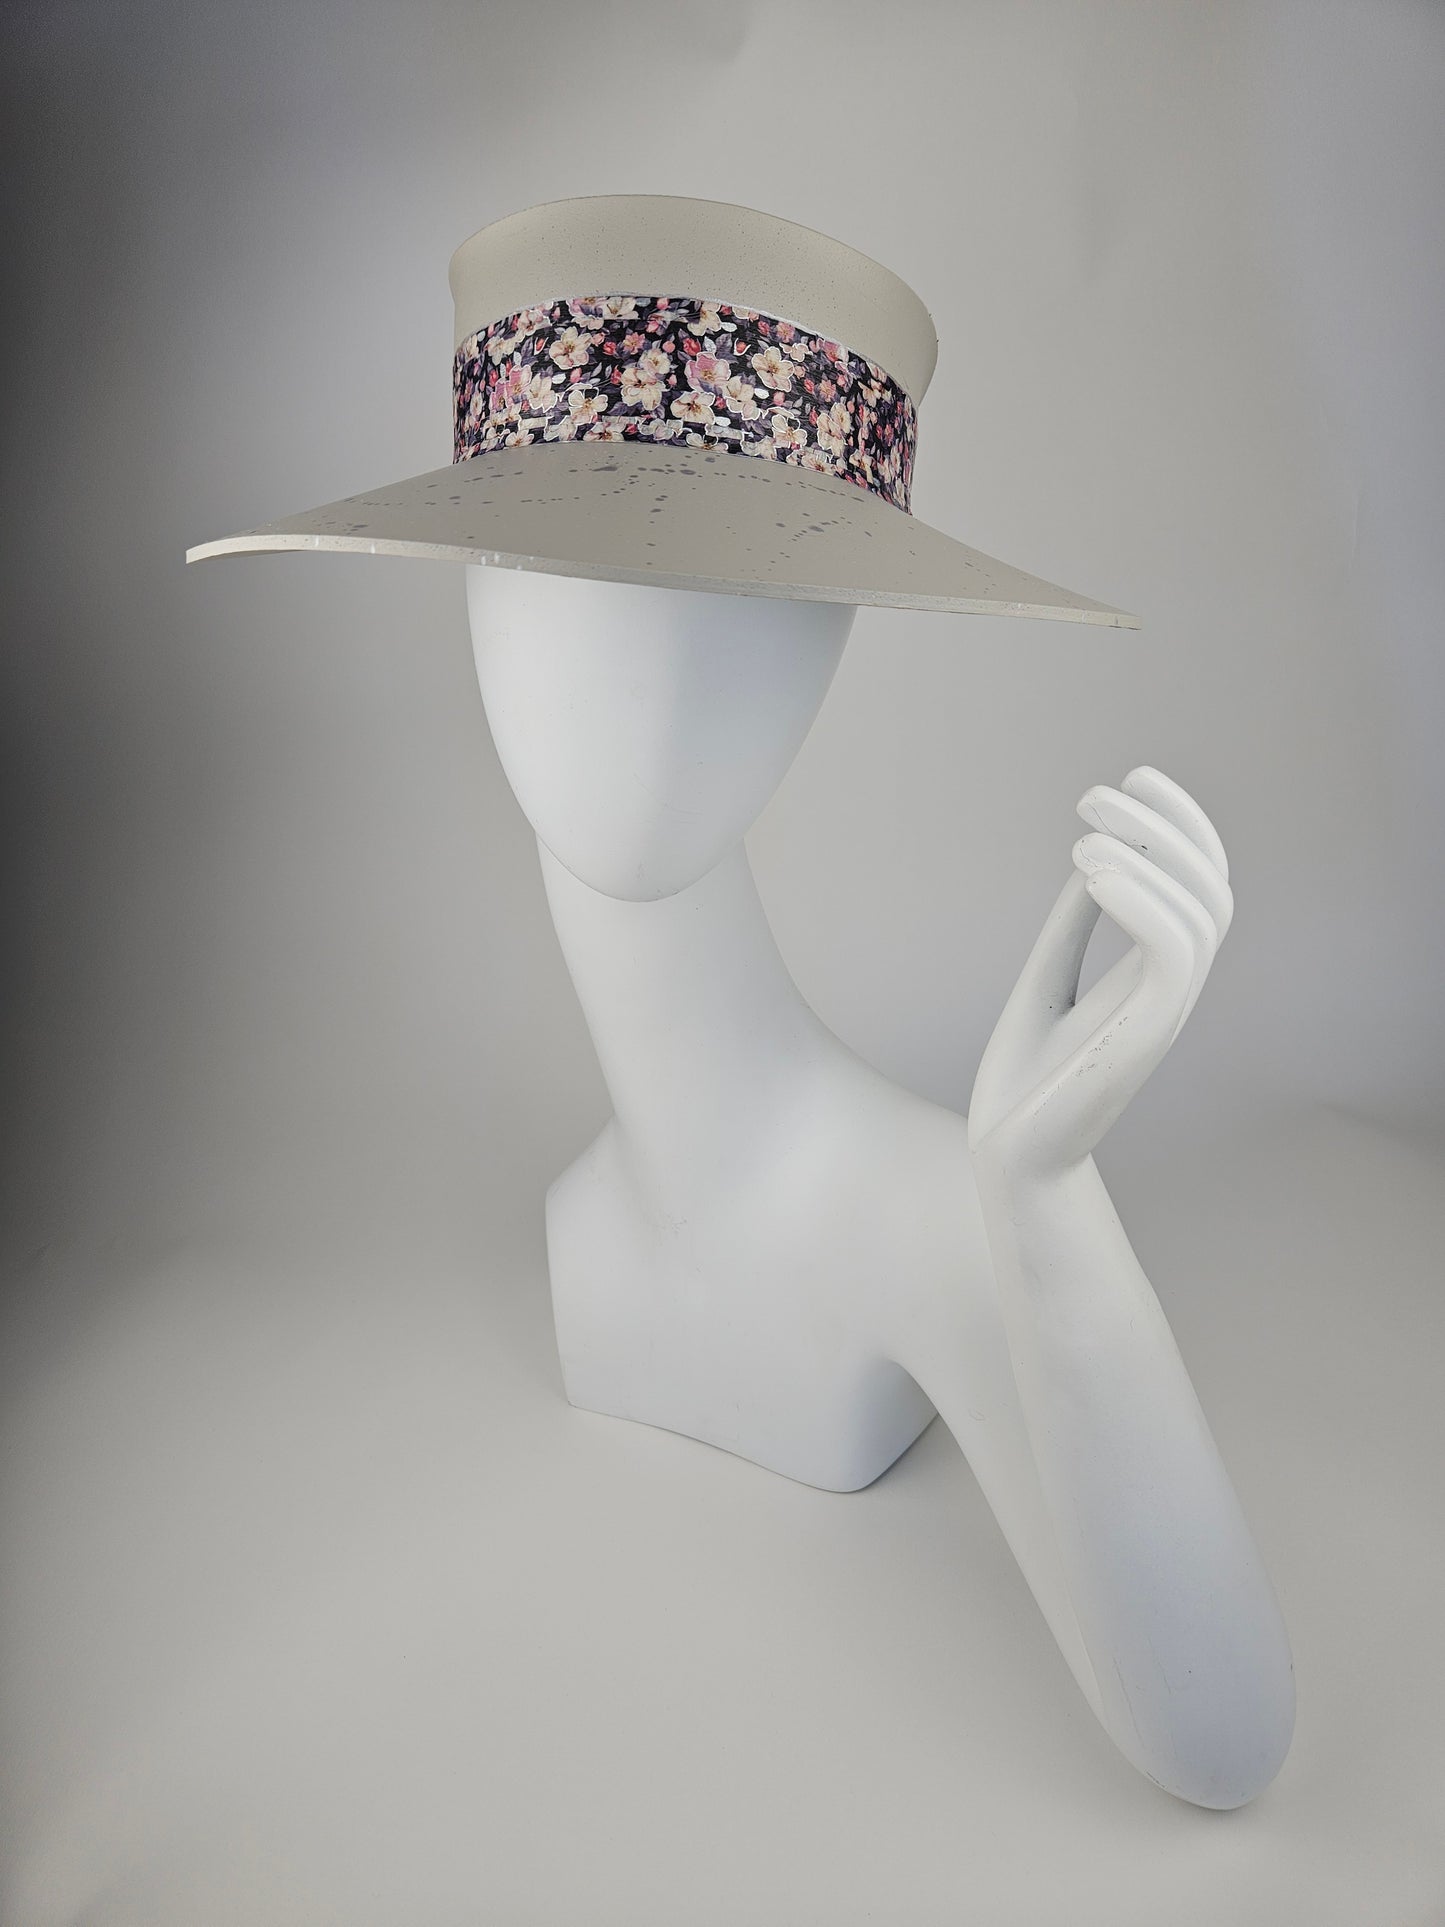 Tall Gorgeous Gray Beige Audrey Foam Sun Visor Hat with Dark Floral Band and Silver Paint Splatter Effect: Tea, Walks, Brunch, Fancy, Golf, Summer, Church, No Headache, Pool